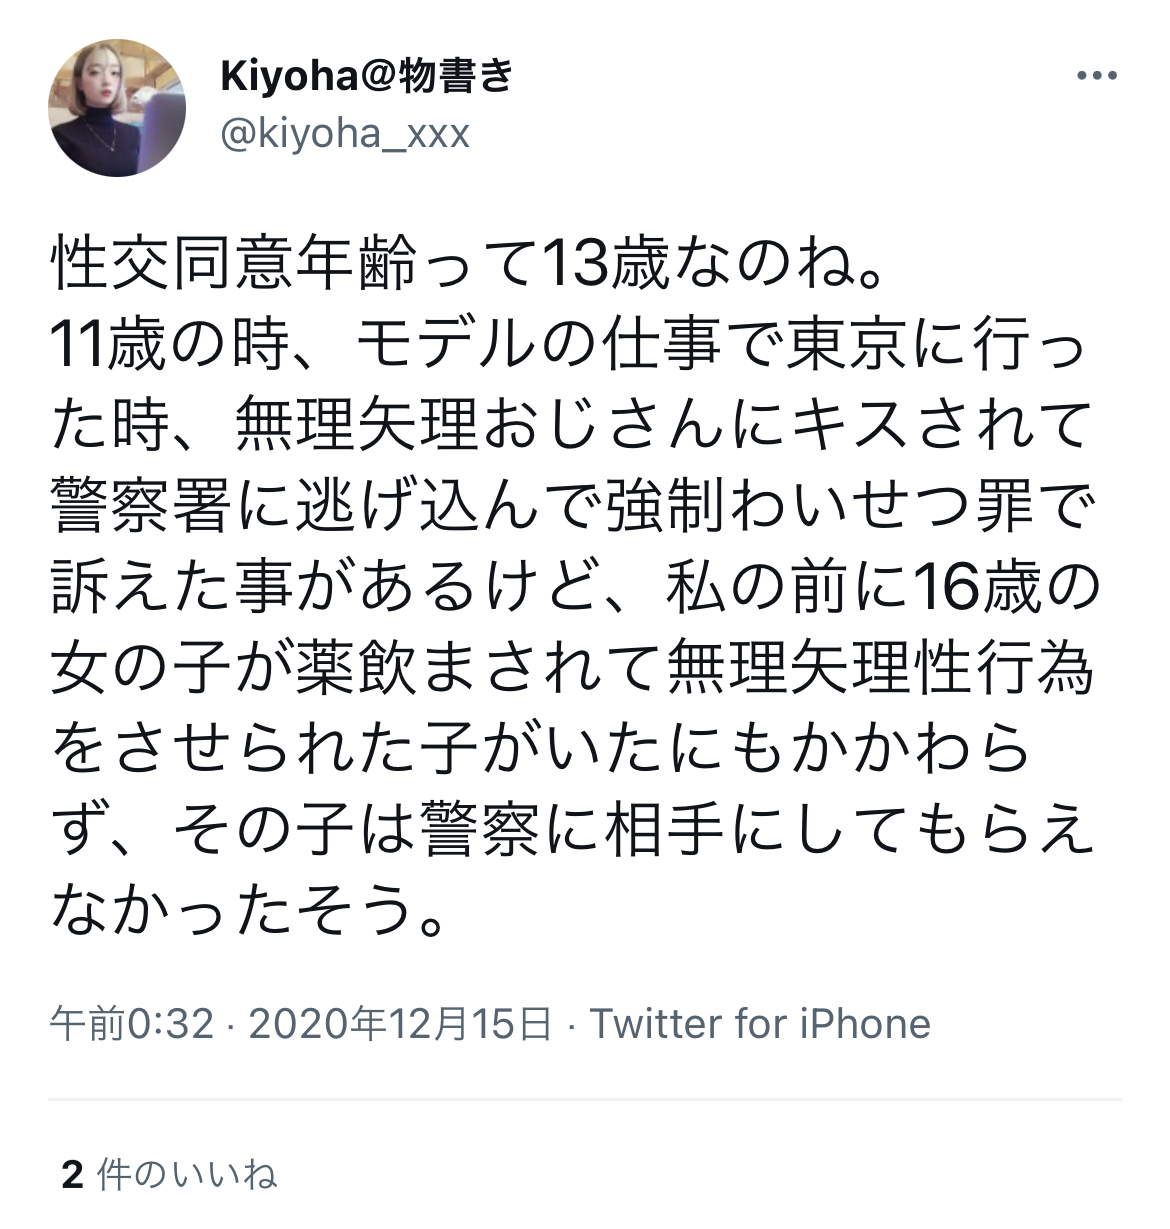 kiyoha-tweet-1.jpg